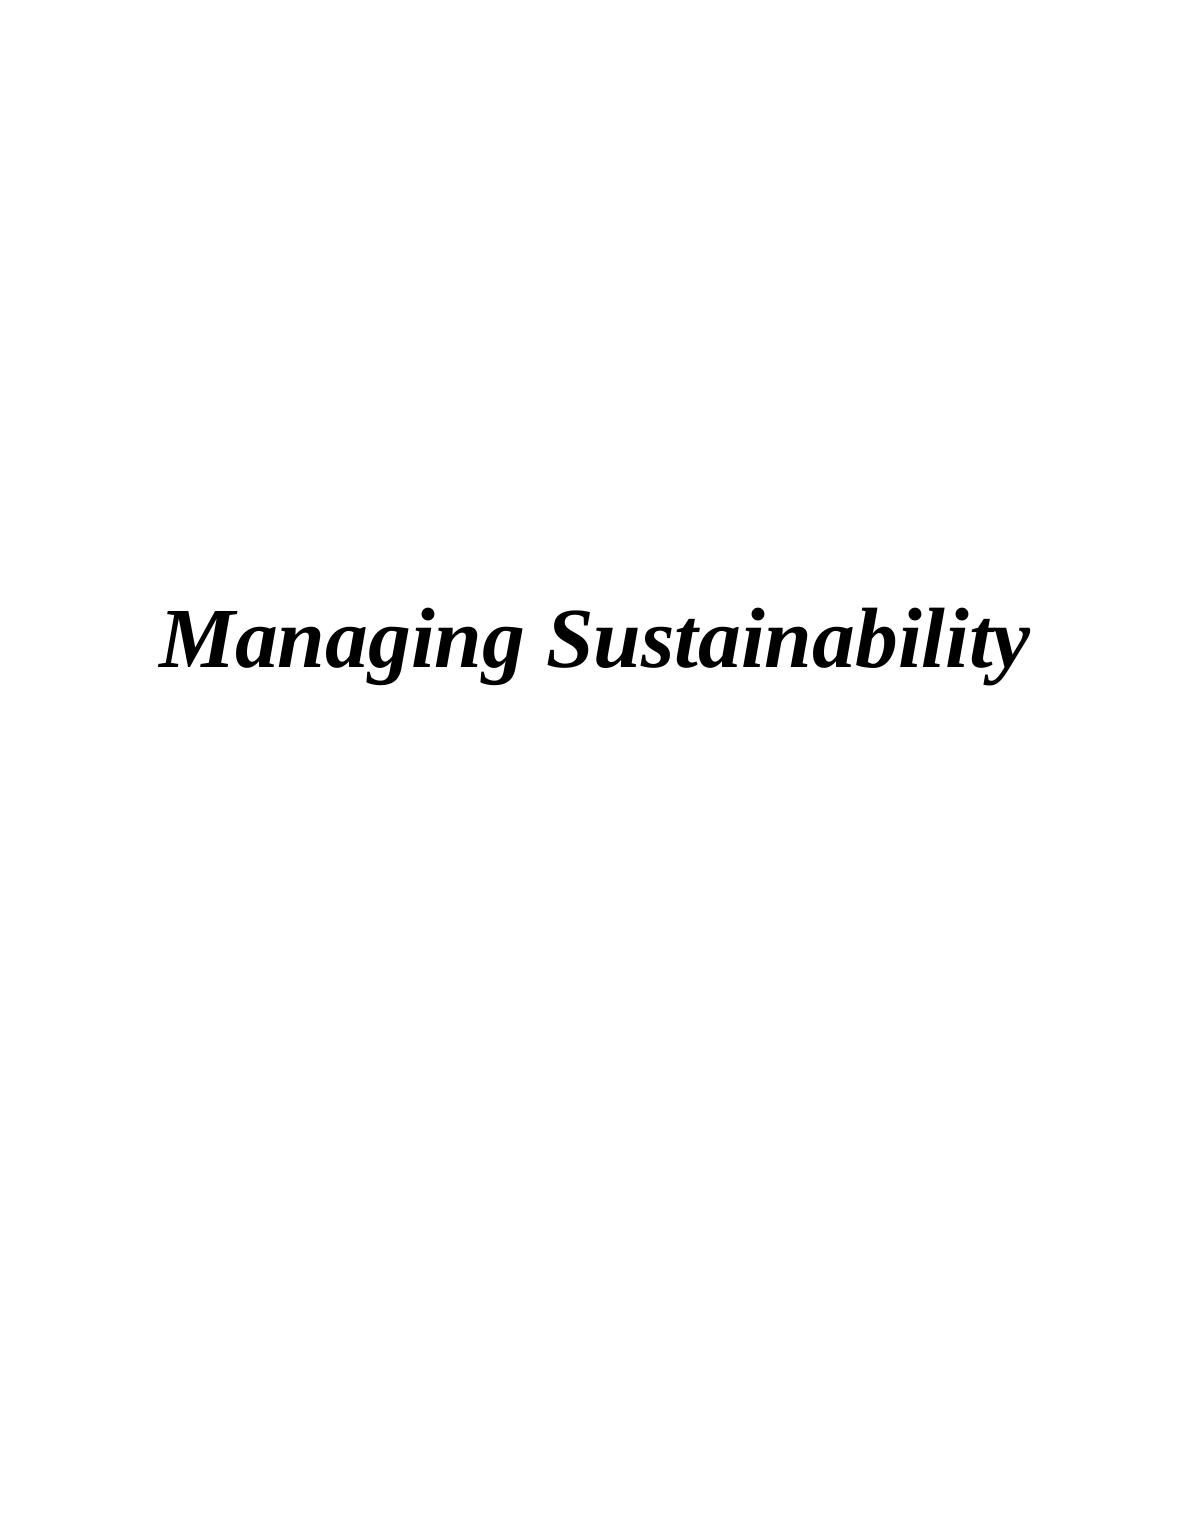 Managing Sustainability_1